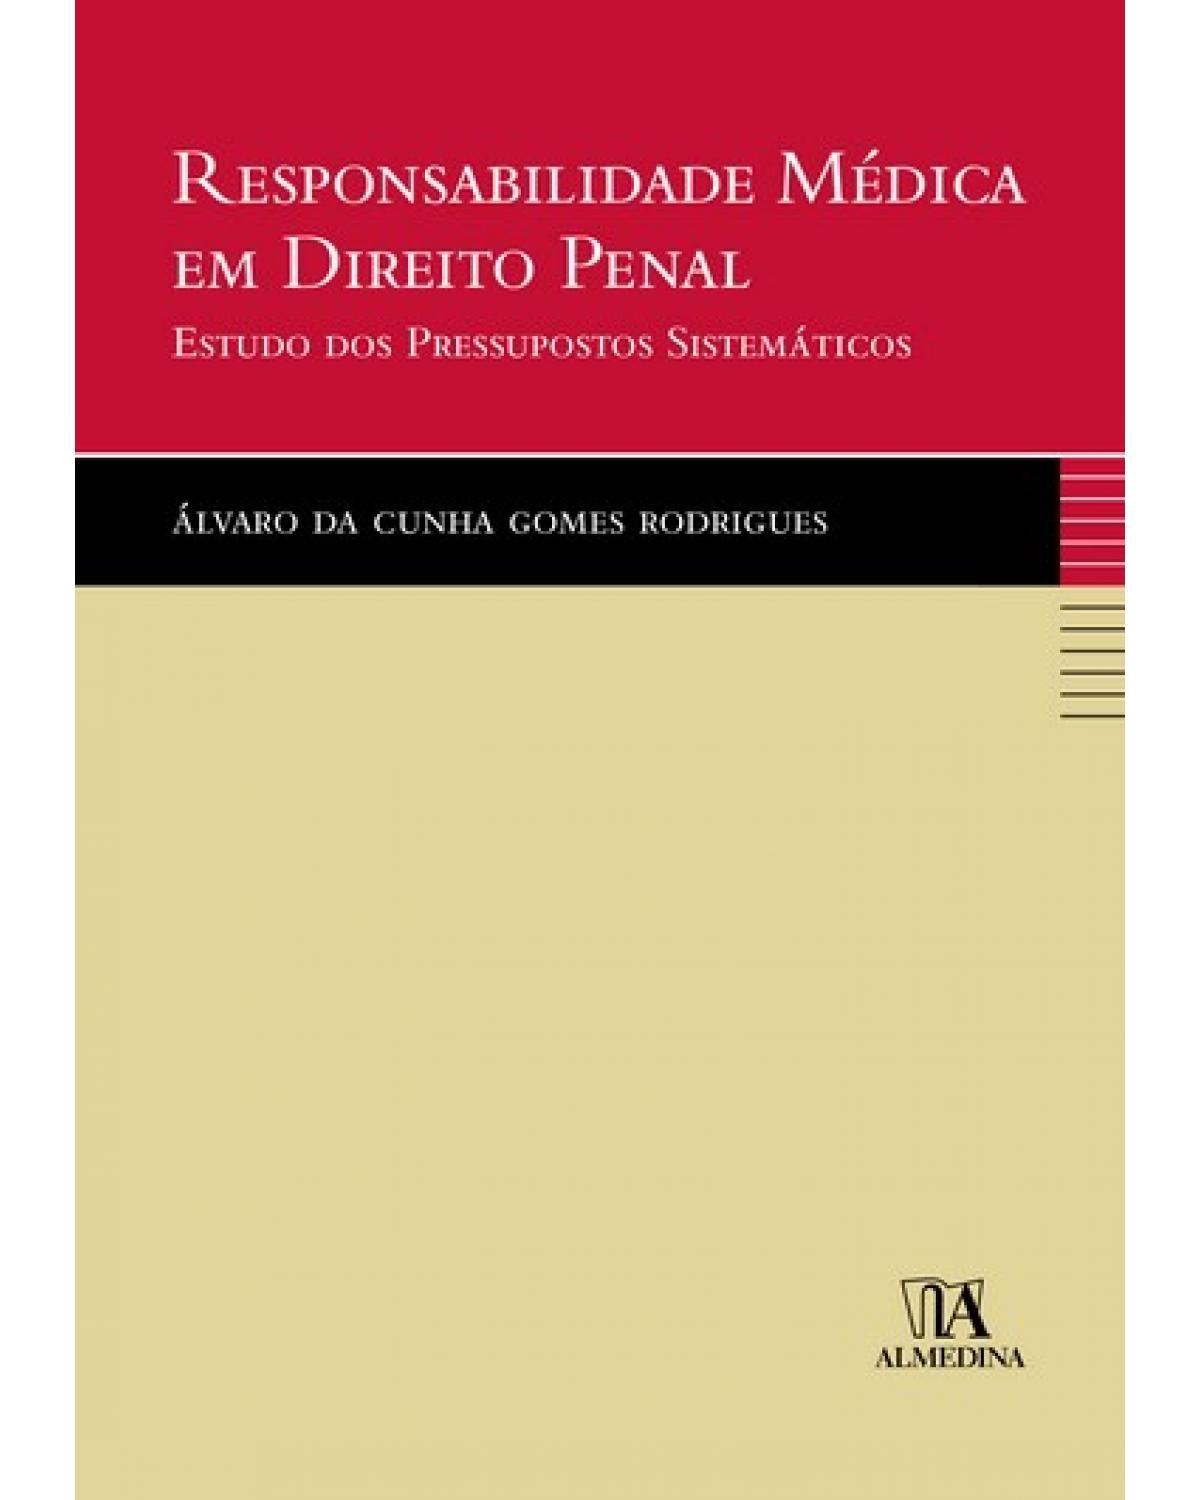 Responsabilidade médica em direito penal  - estudo dos pressupostos sistemáticos - 1ª Edição | 2007